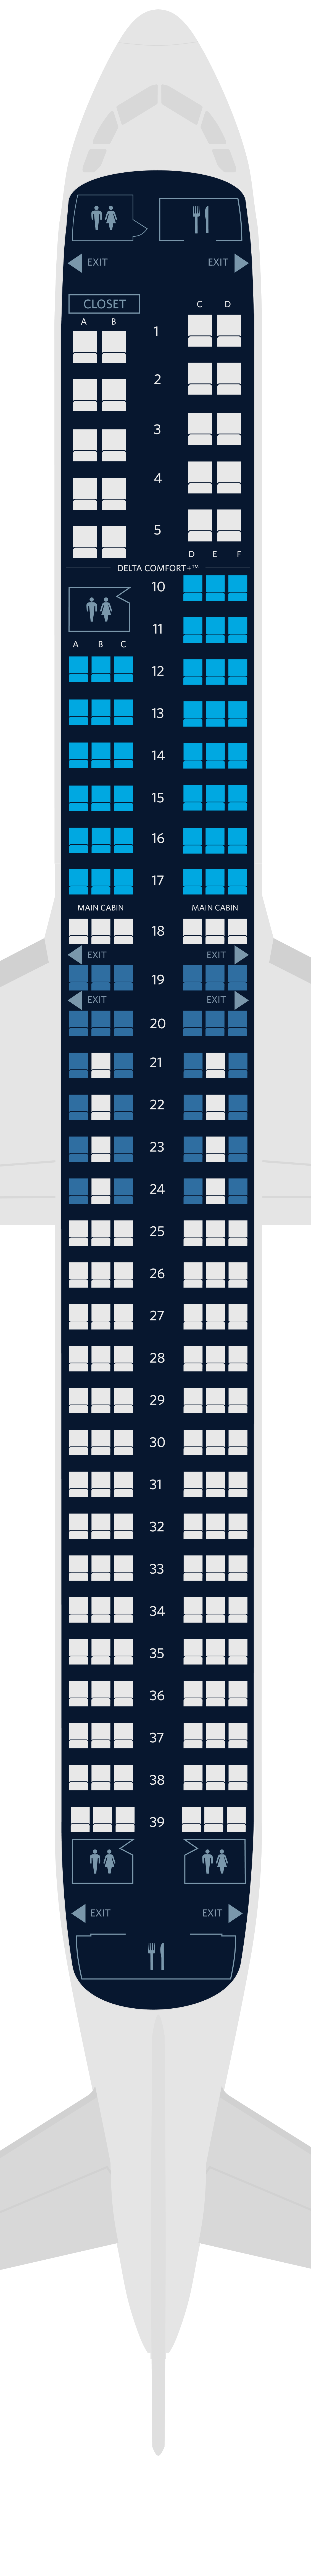 Plan des sièges de l'Airbus A321neo